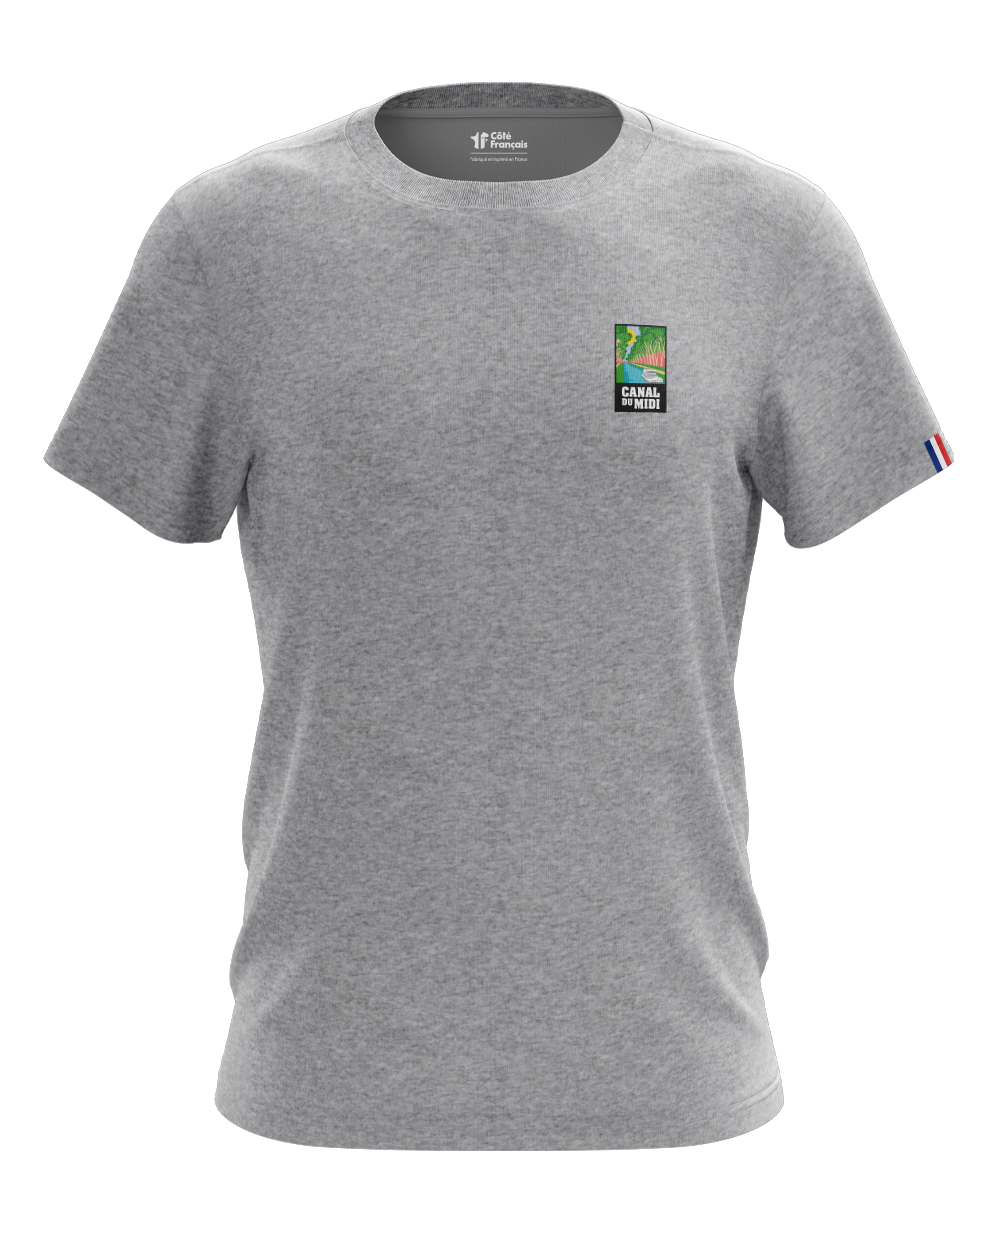 T-Shirt "Canal du midi" - gris